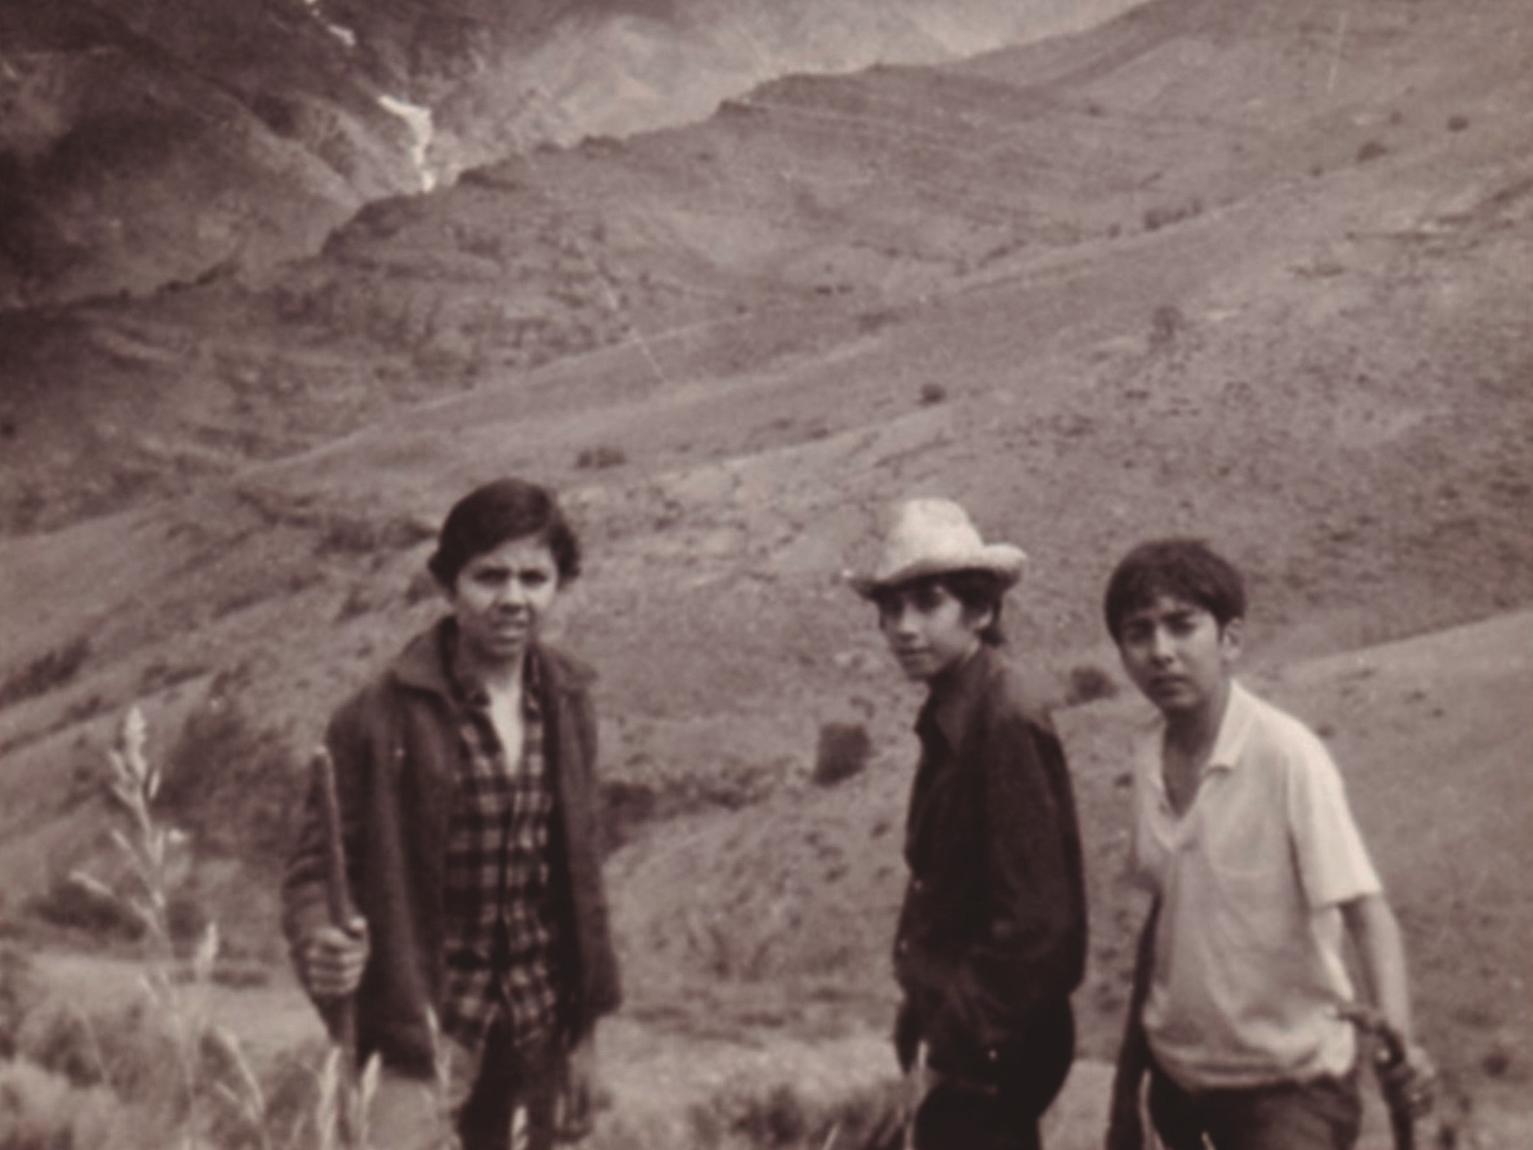 Fotografía de tres niños posando en un paisaje cordillerano